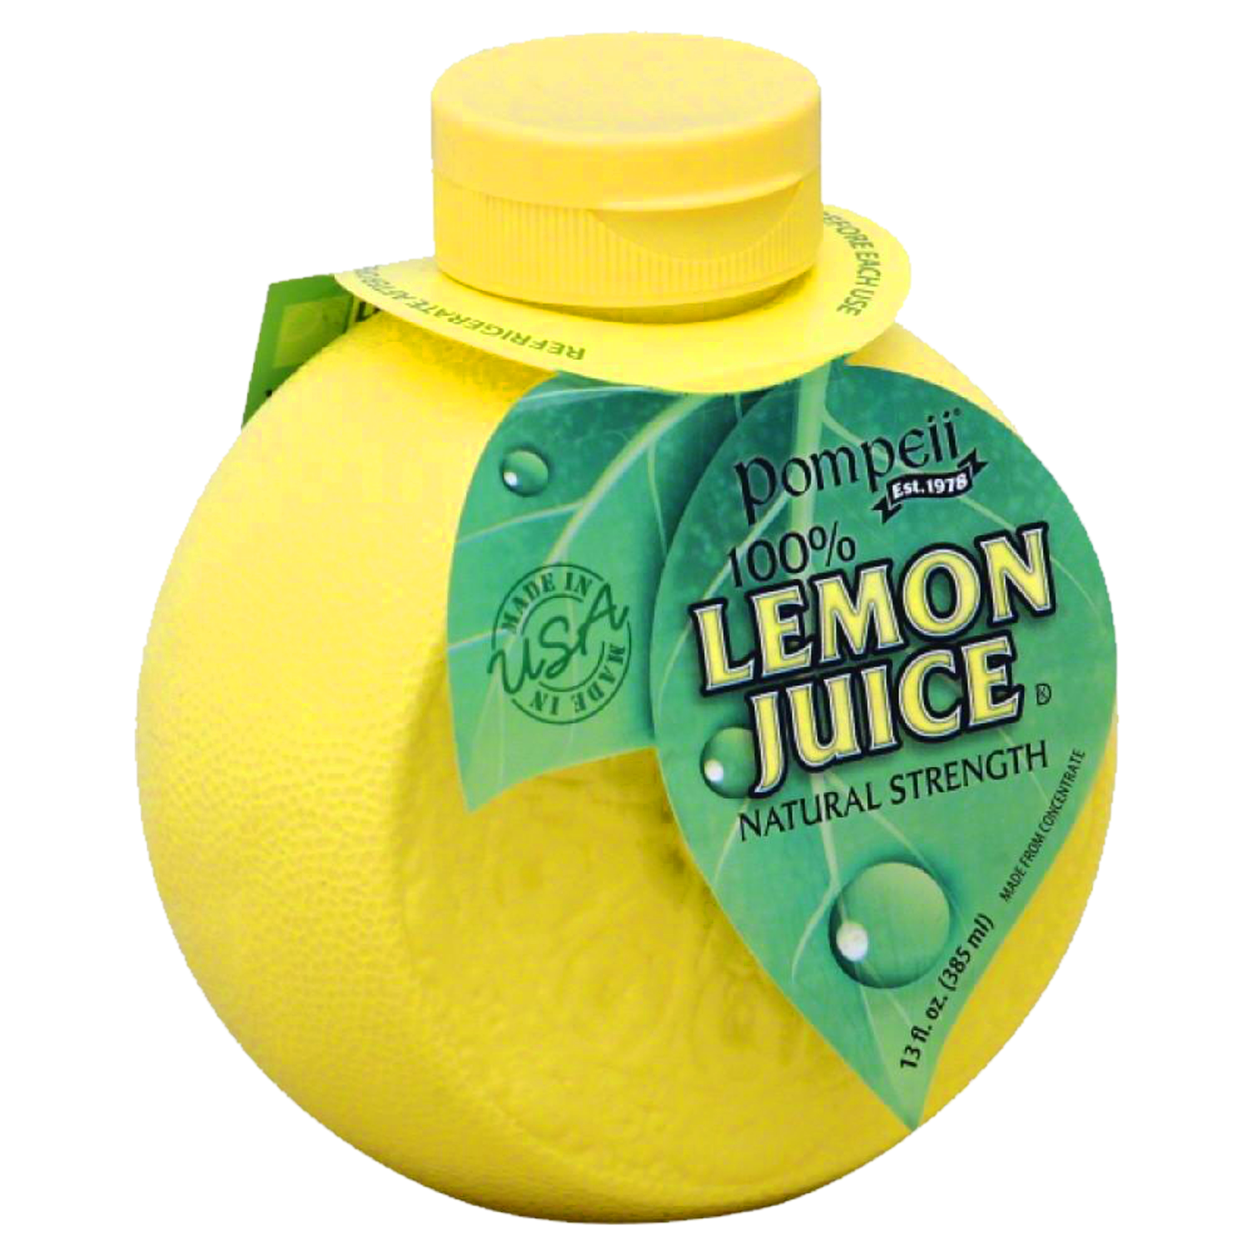 Lemons Juice Iconic